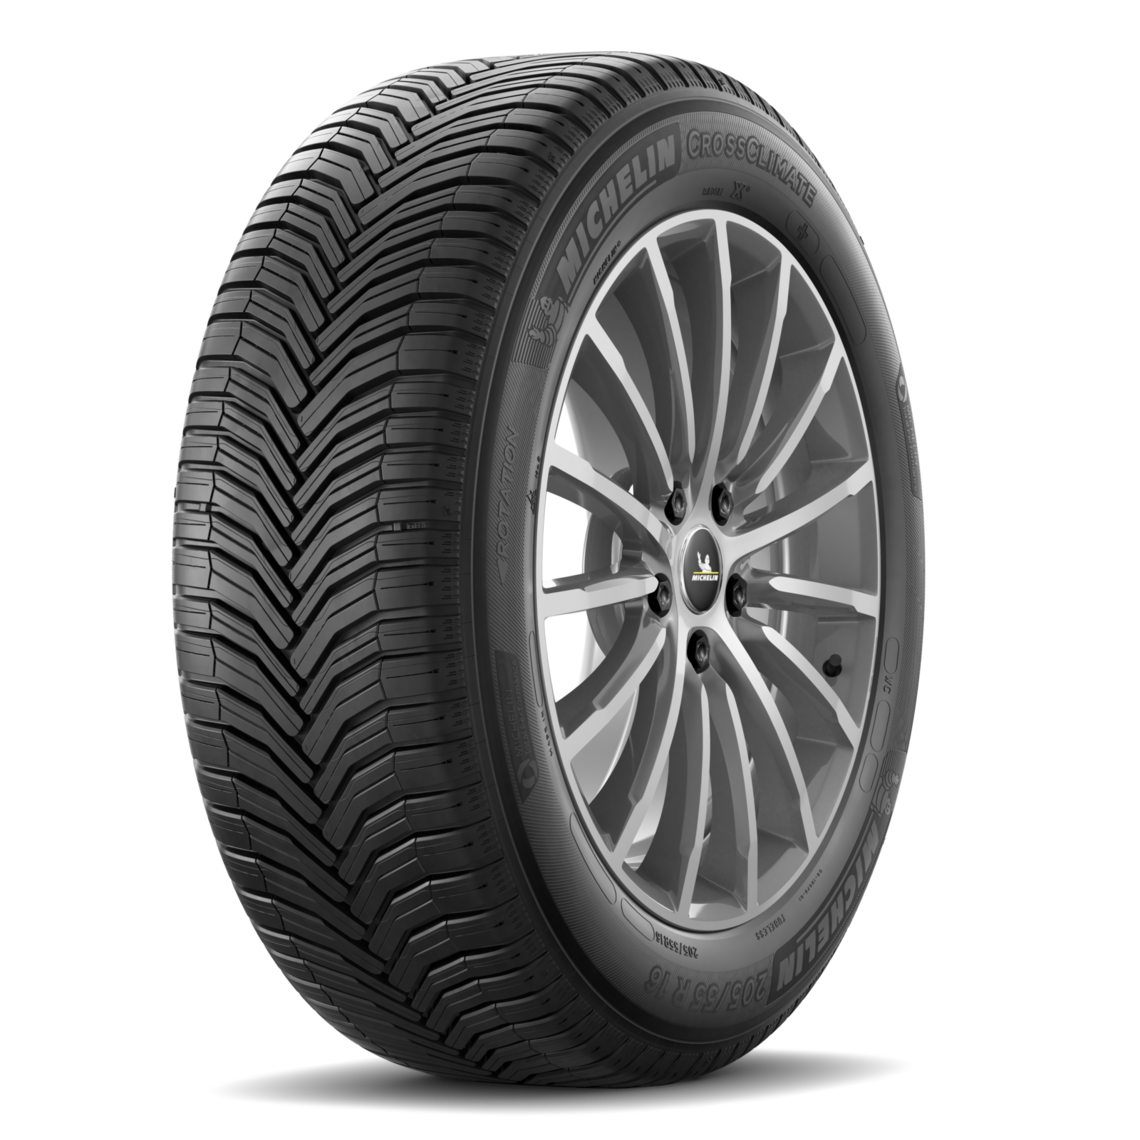 Gomme Nuove Michelin 225/50 R18 95W CROSSCLIMATE 2 SUV M+S pneumatici nuovi All Season